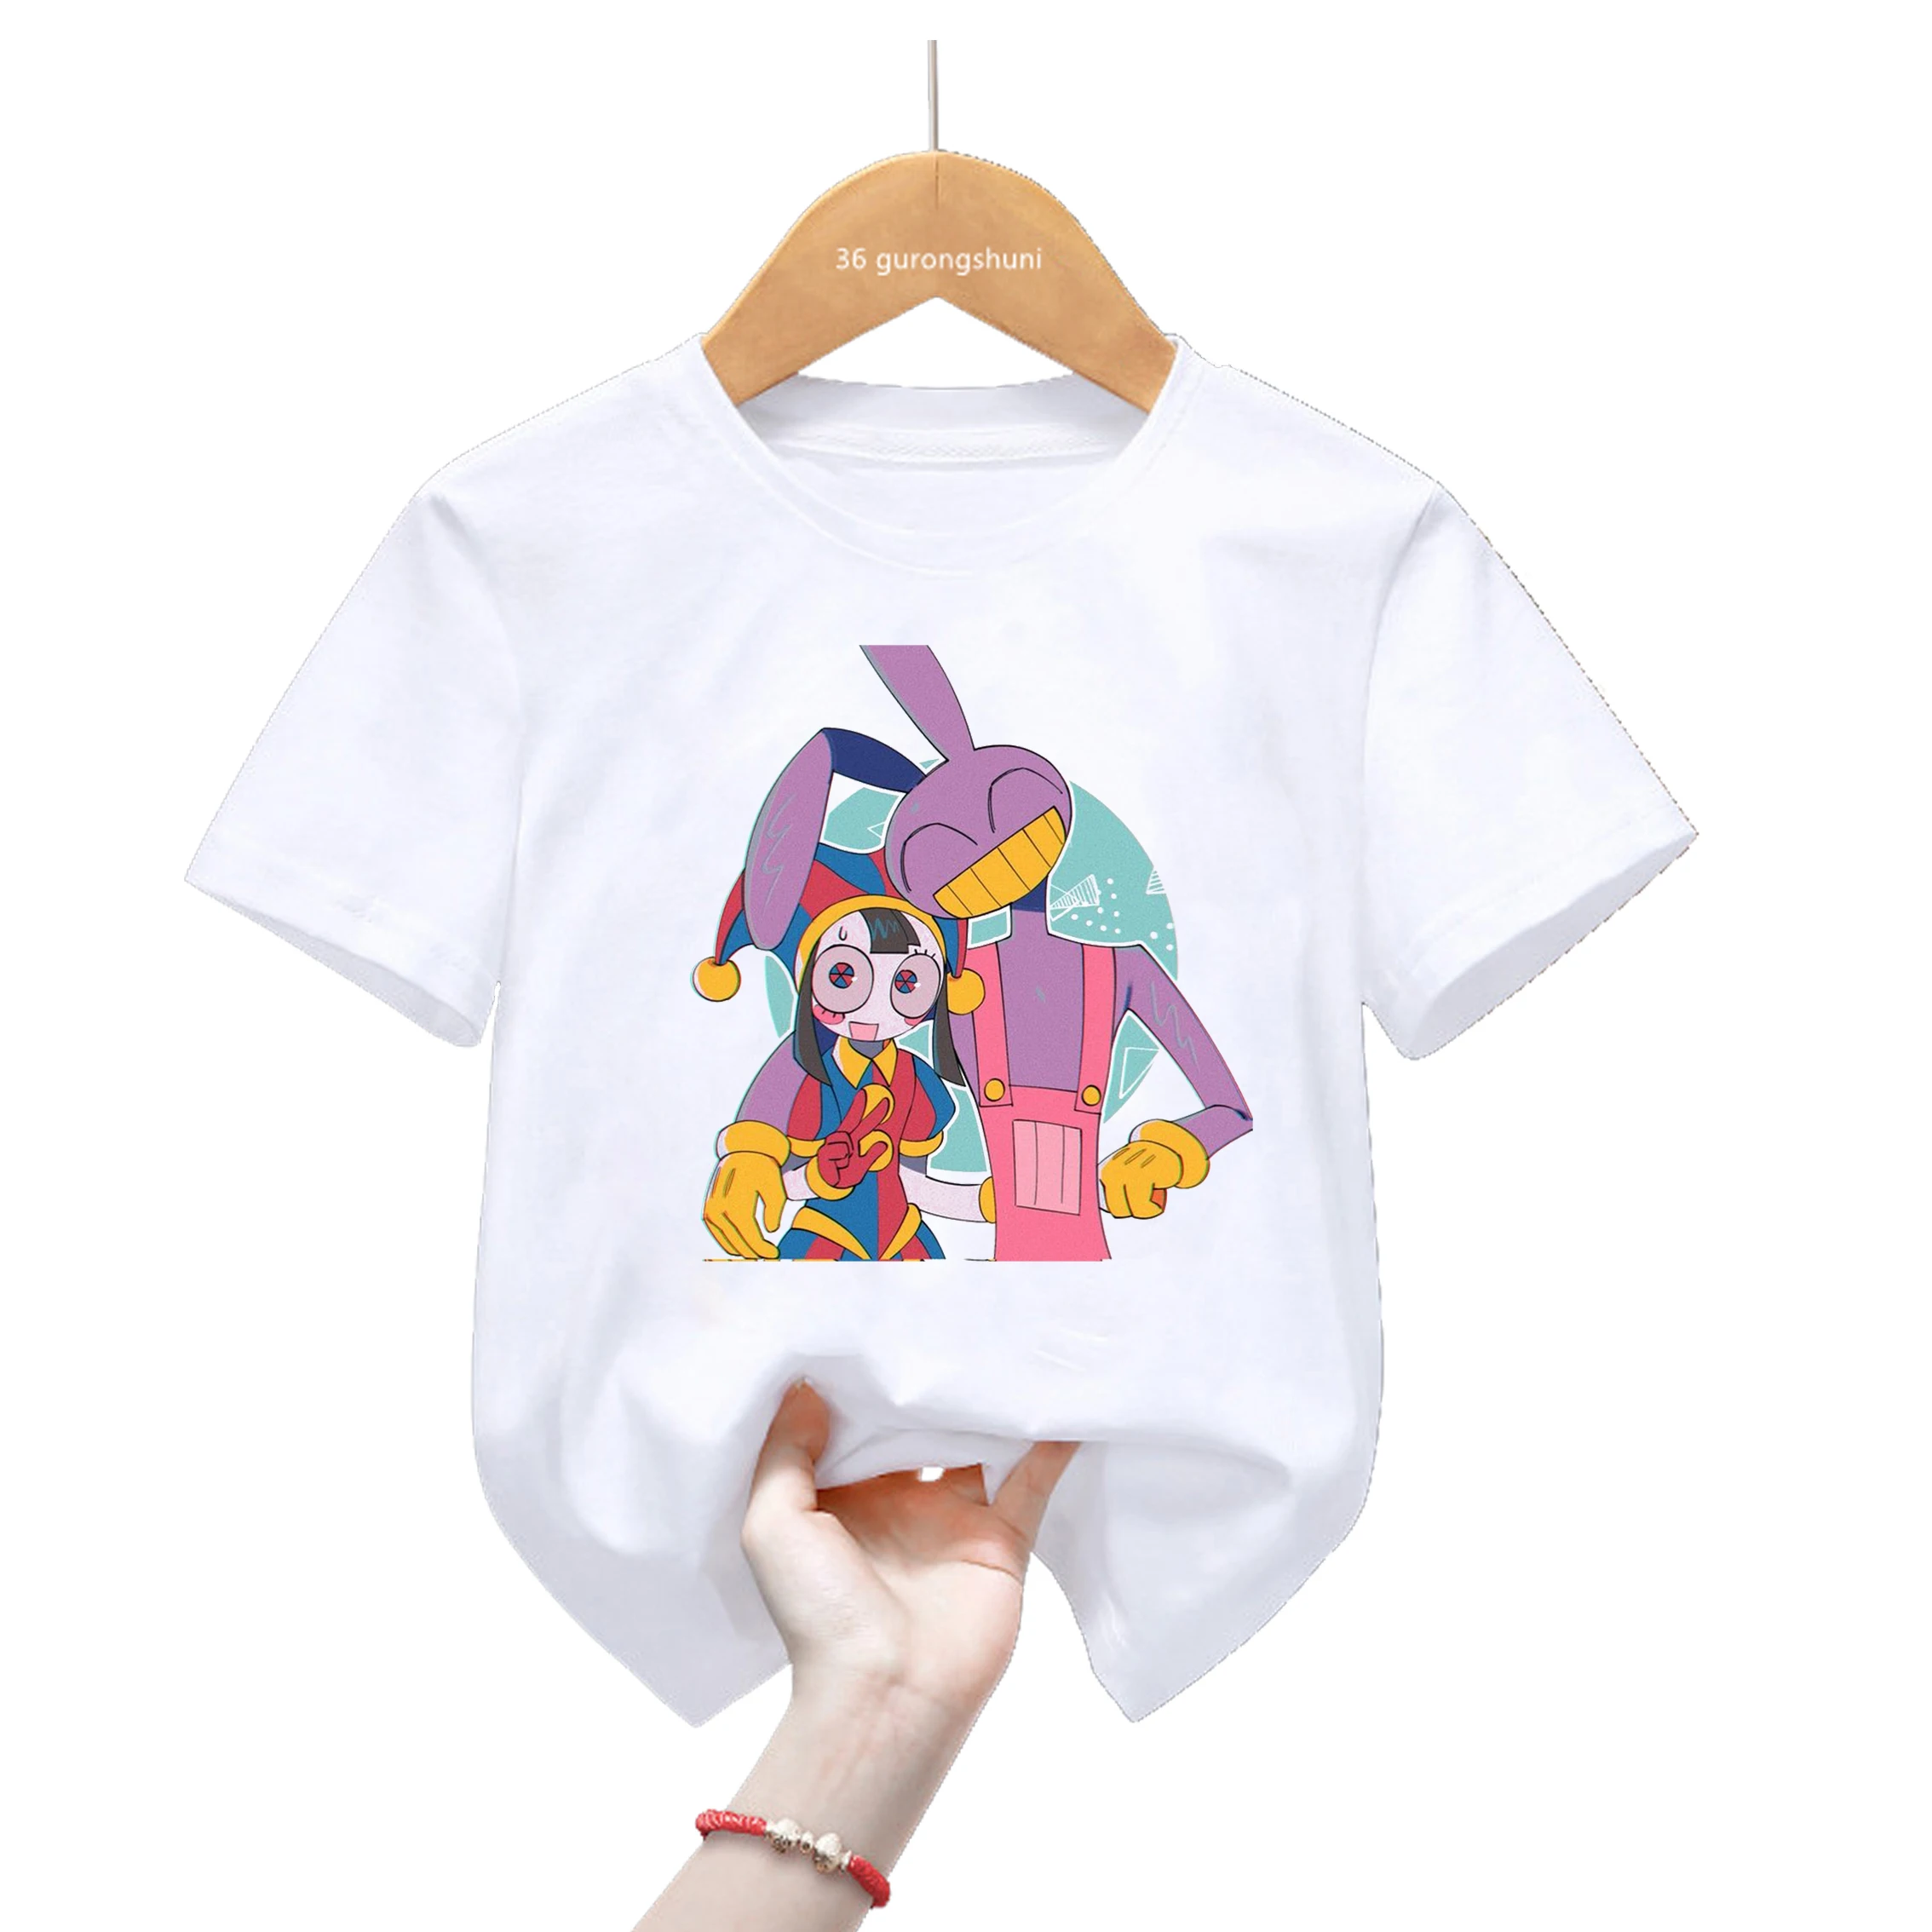 Новая горячая распродажа Удивительная цифровая цирковая графическая футболка с мультяшным принтом Детская одежда Мальчики Девочки Детская футболка Футболки унисекс Топы